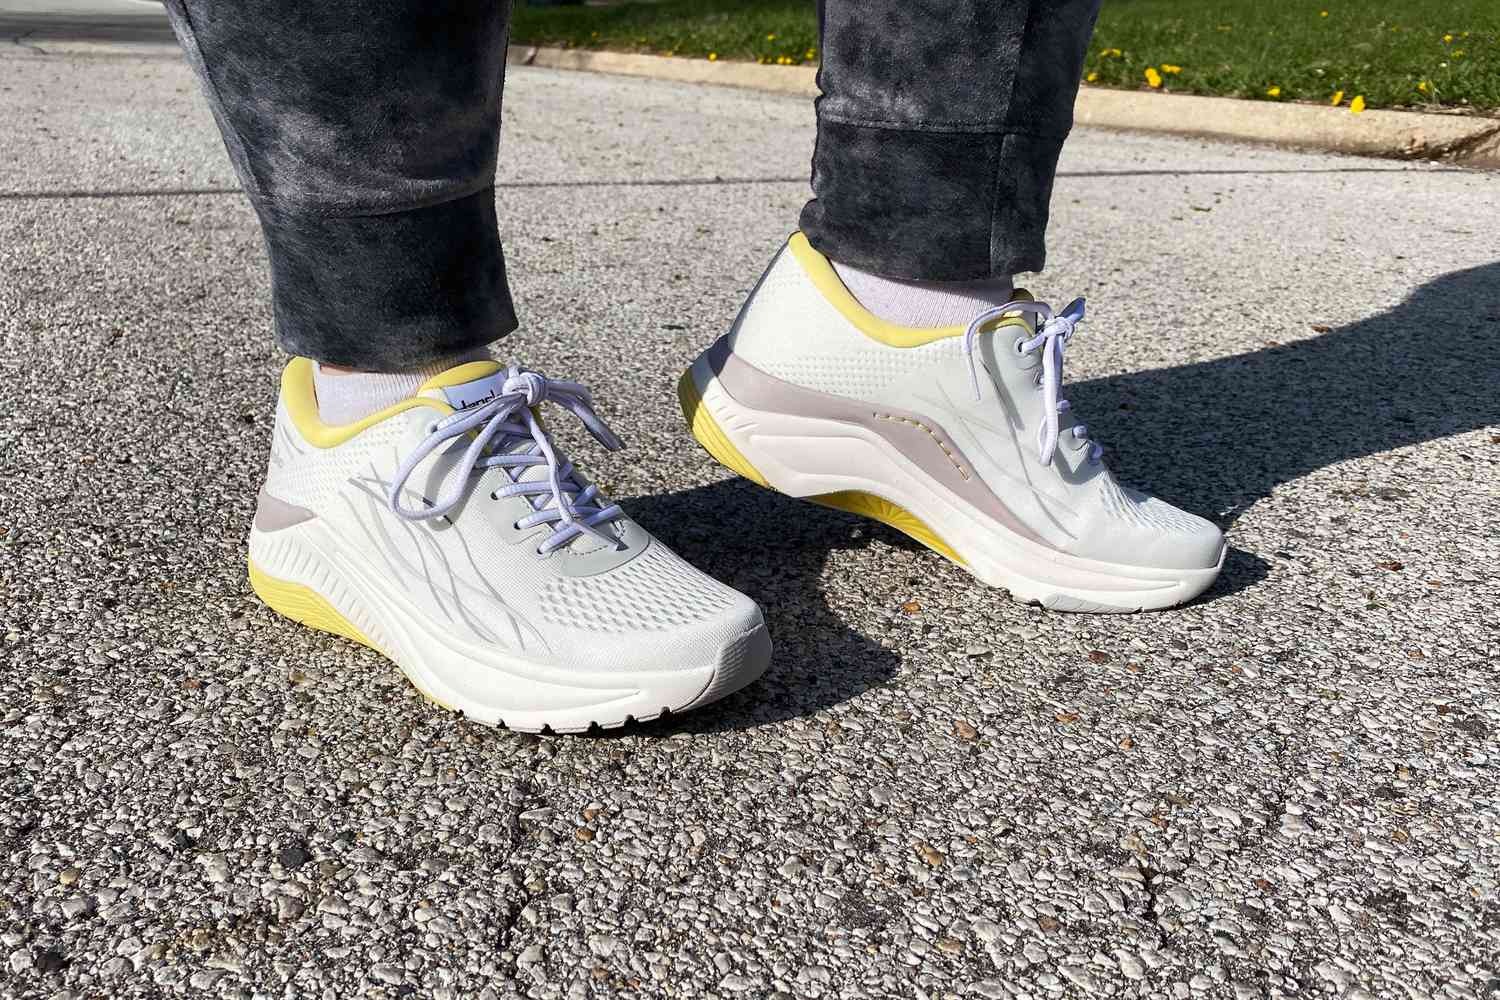 Feet wearing Dansko Women's Pace Walking Shoes on a paved surface